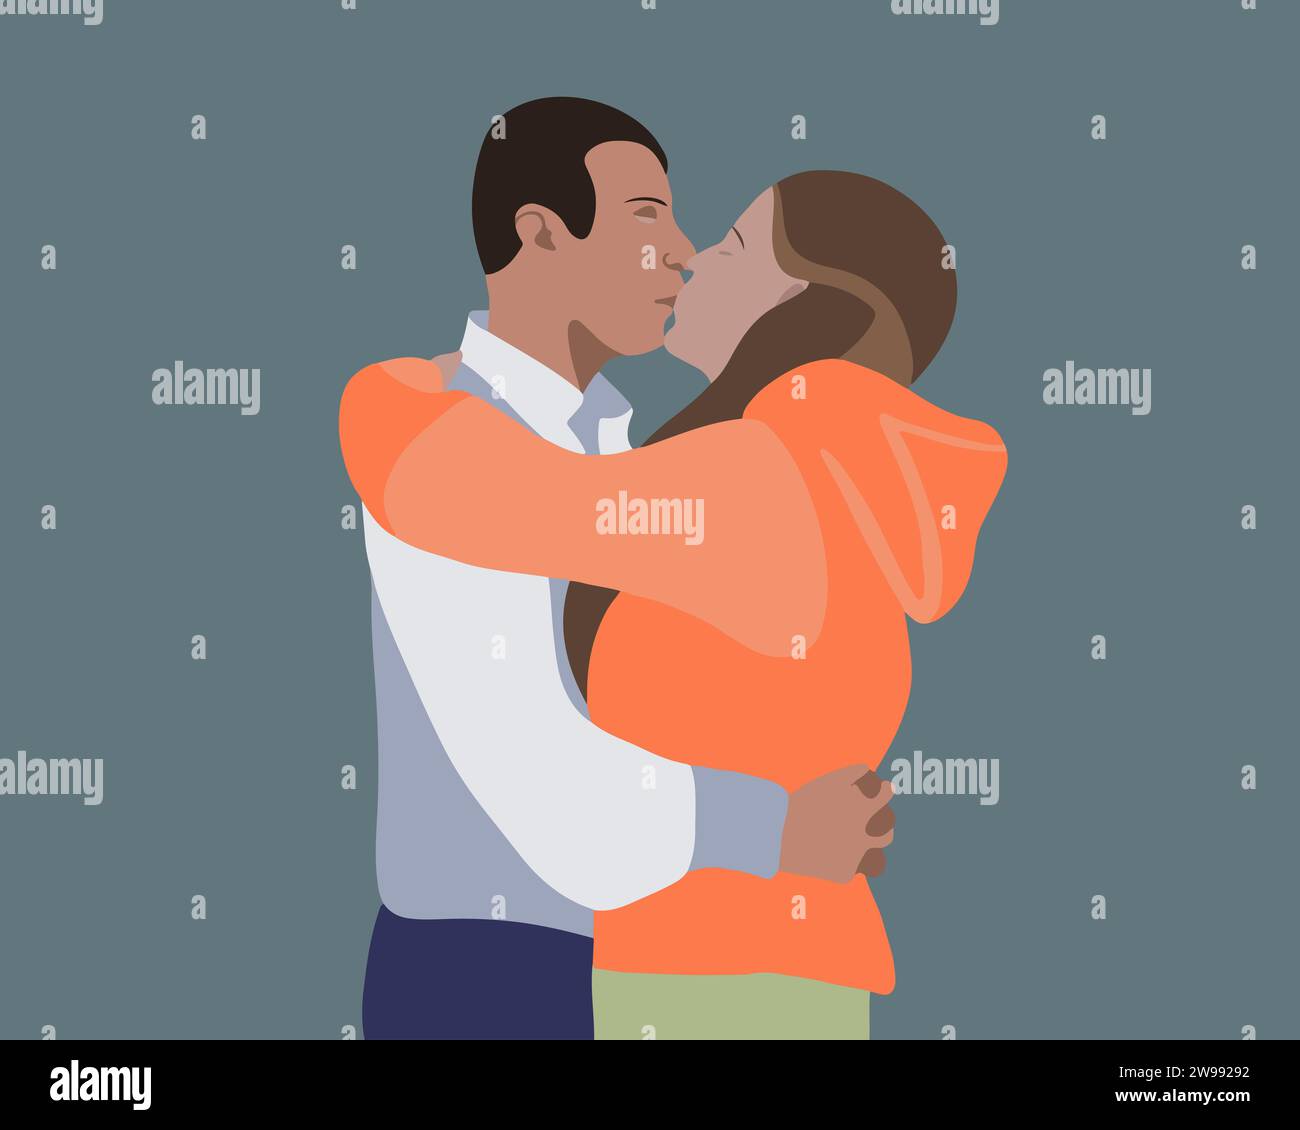 Vektor-isolierte Illustration eines küssenden Paares. Er enthüllt eine Beziehung mit einem Kuss. Ein Mann und ein Mädchen verliebt. Stock Vektor